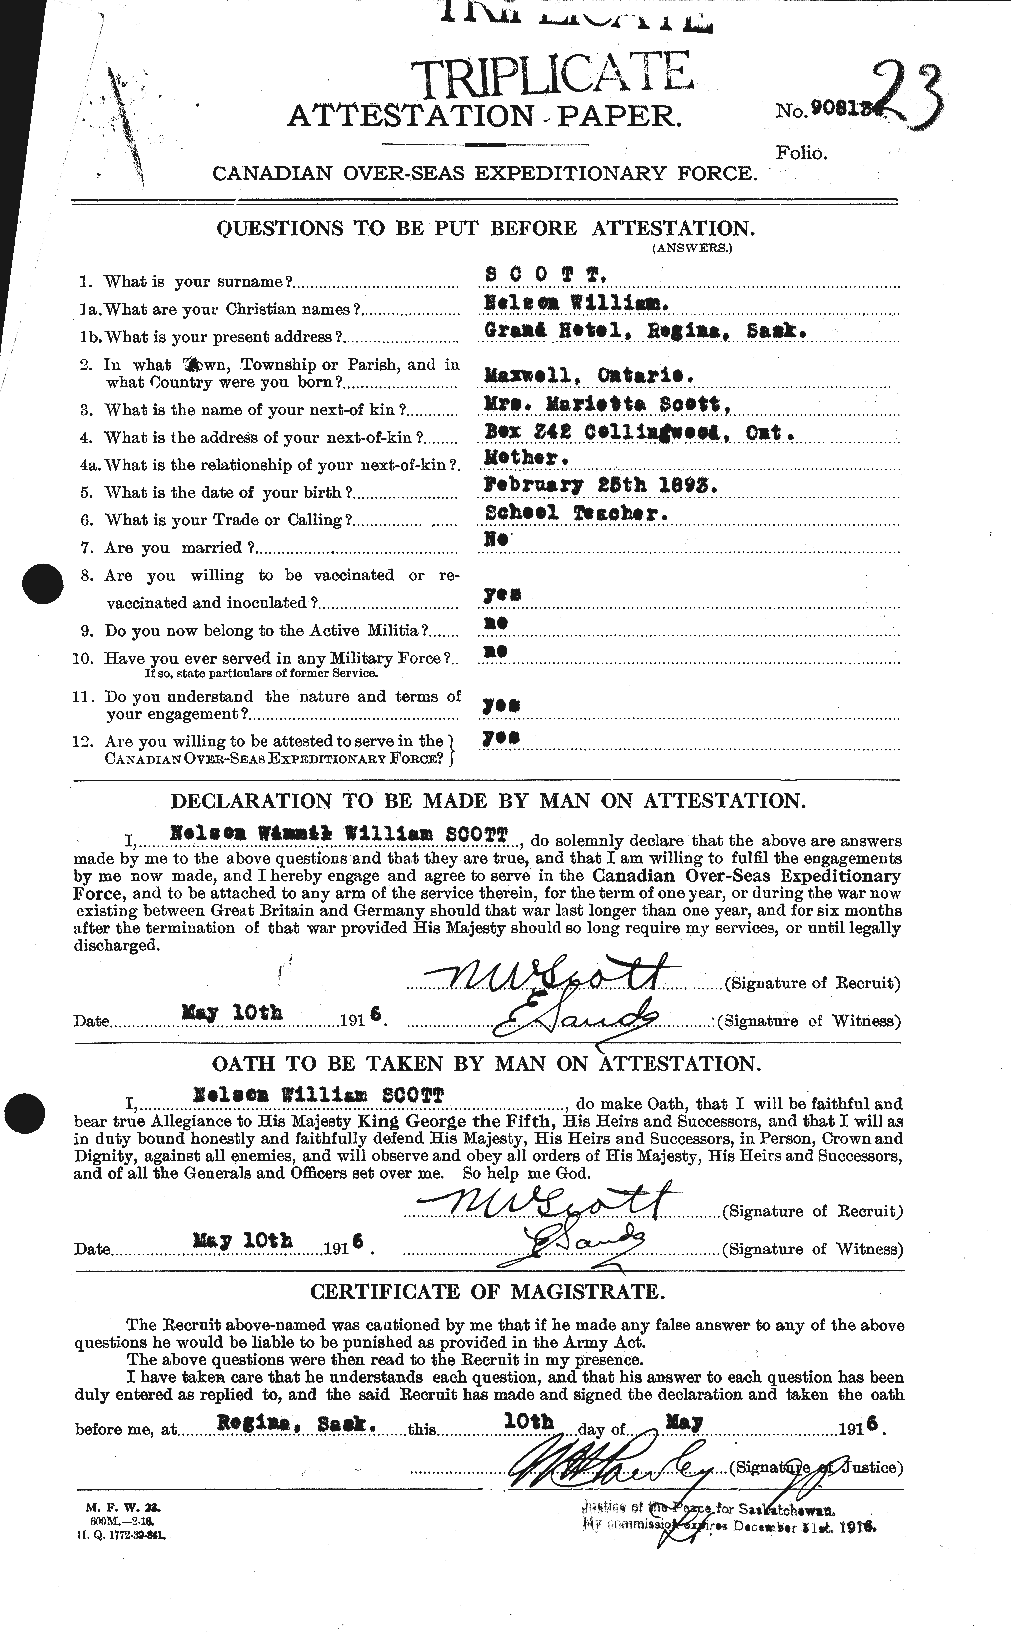 Dossiers du Personnel de la Première Guerre mondiale - CEC 083211a